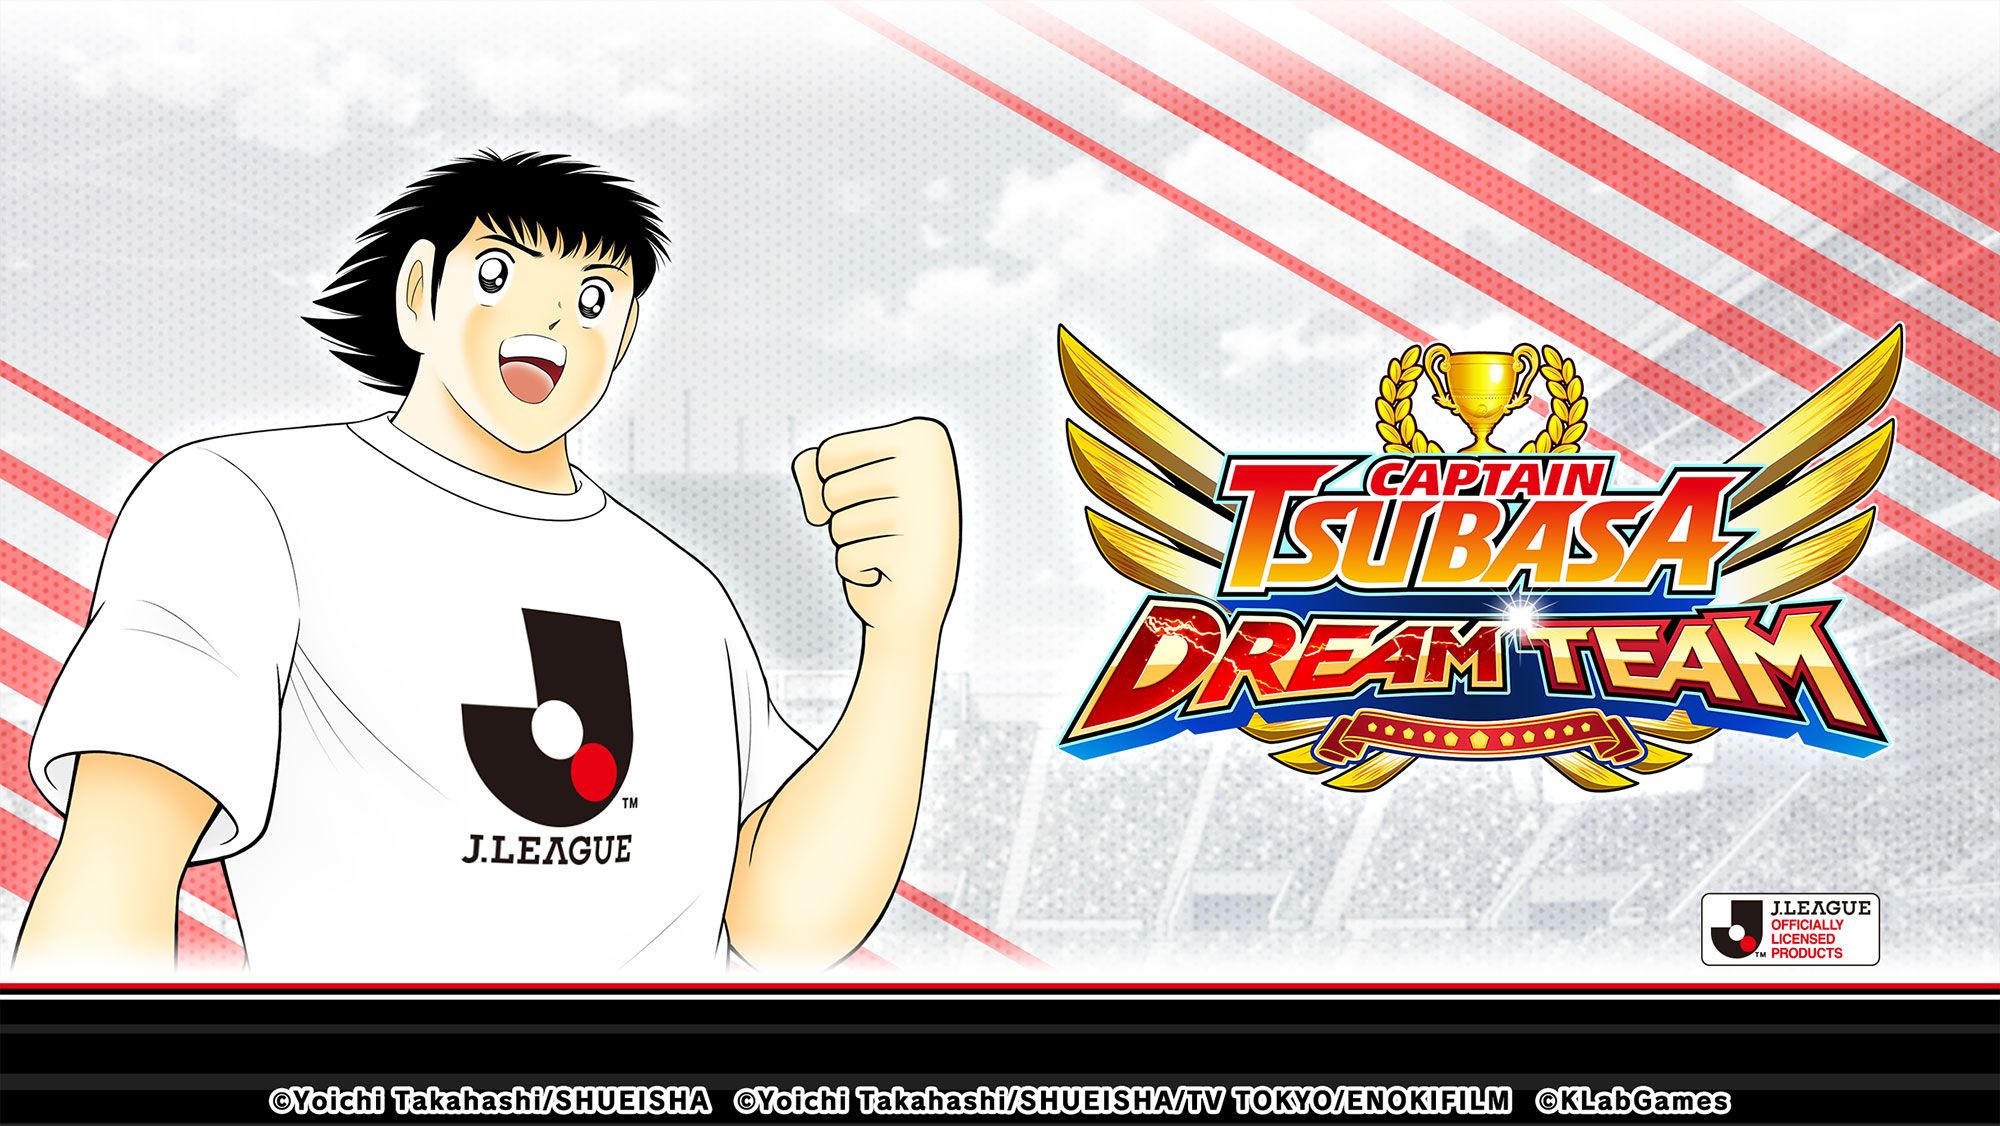 Captain Tsubasa: Dream Team mengumumkan Kolaborasi dengan J.League.